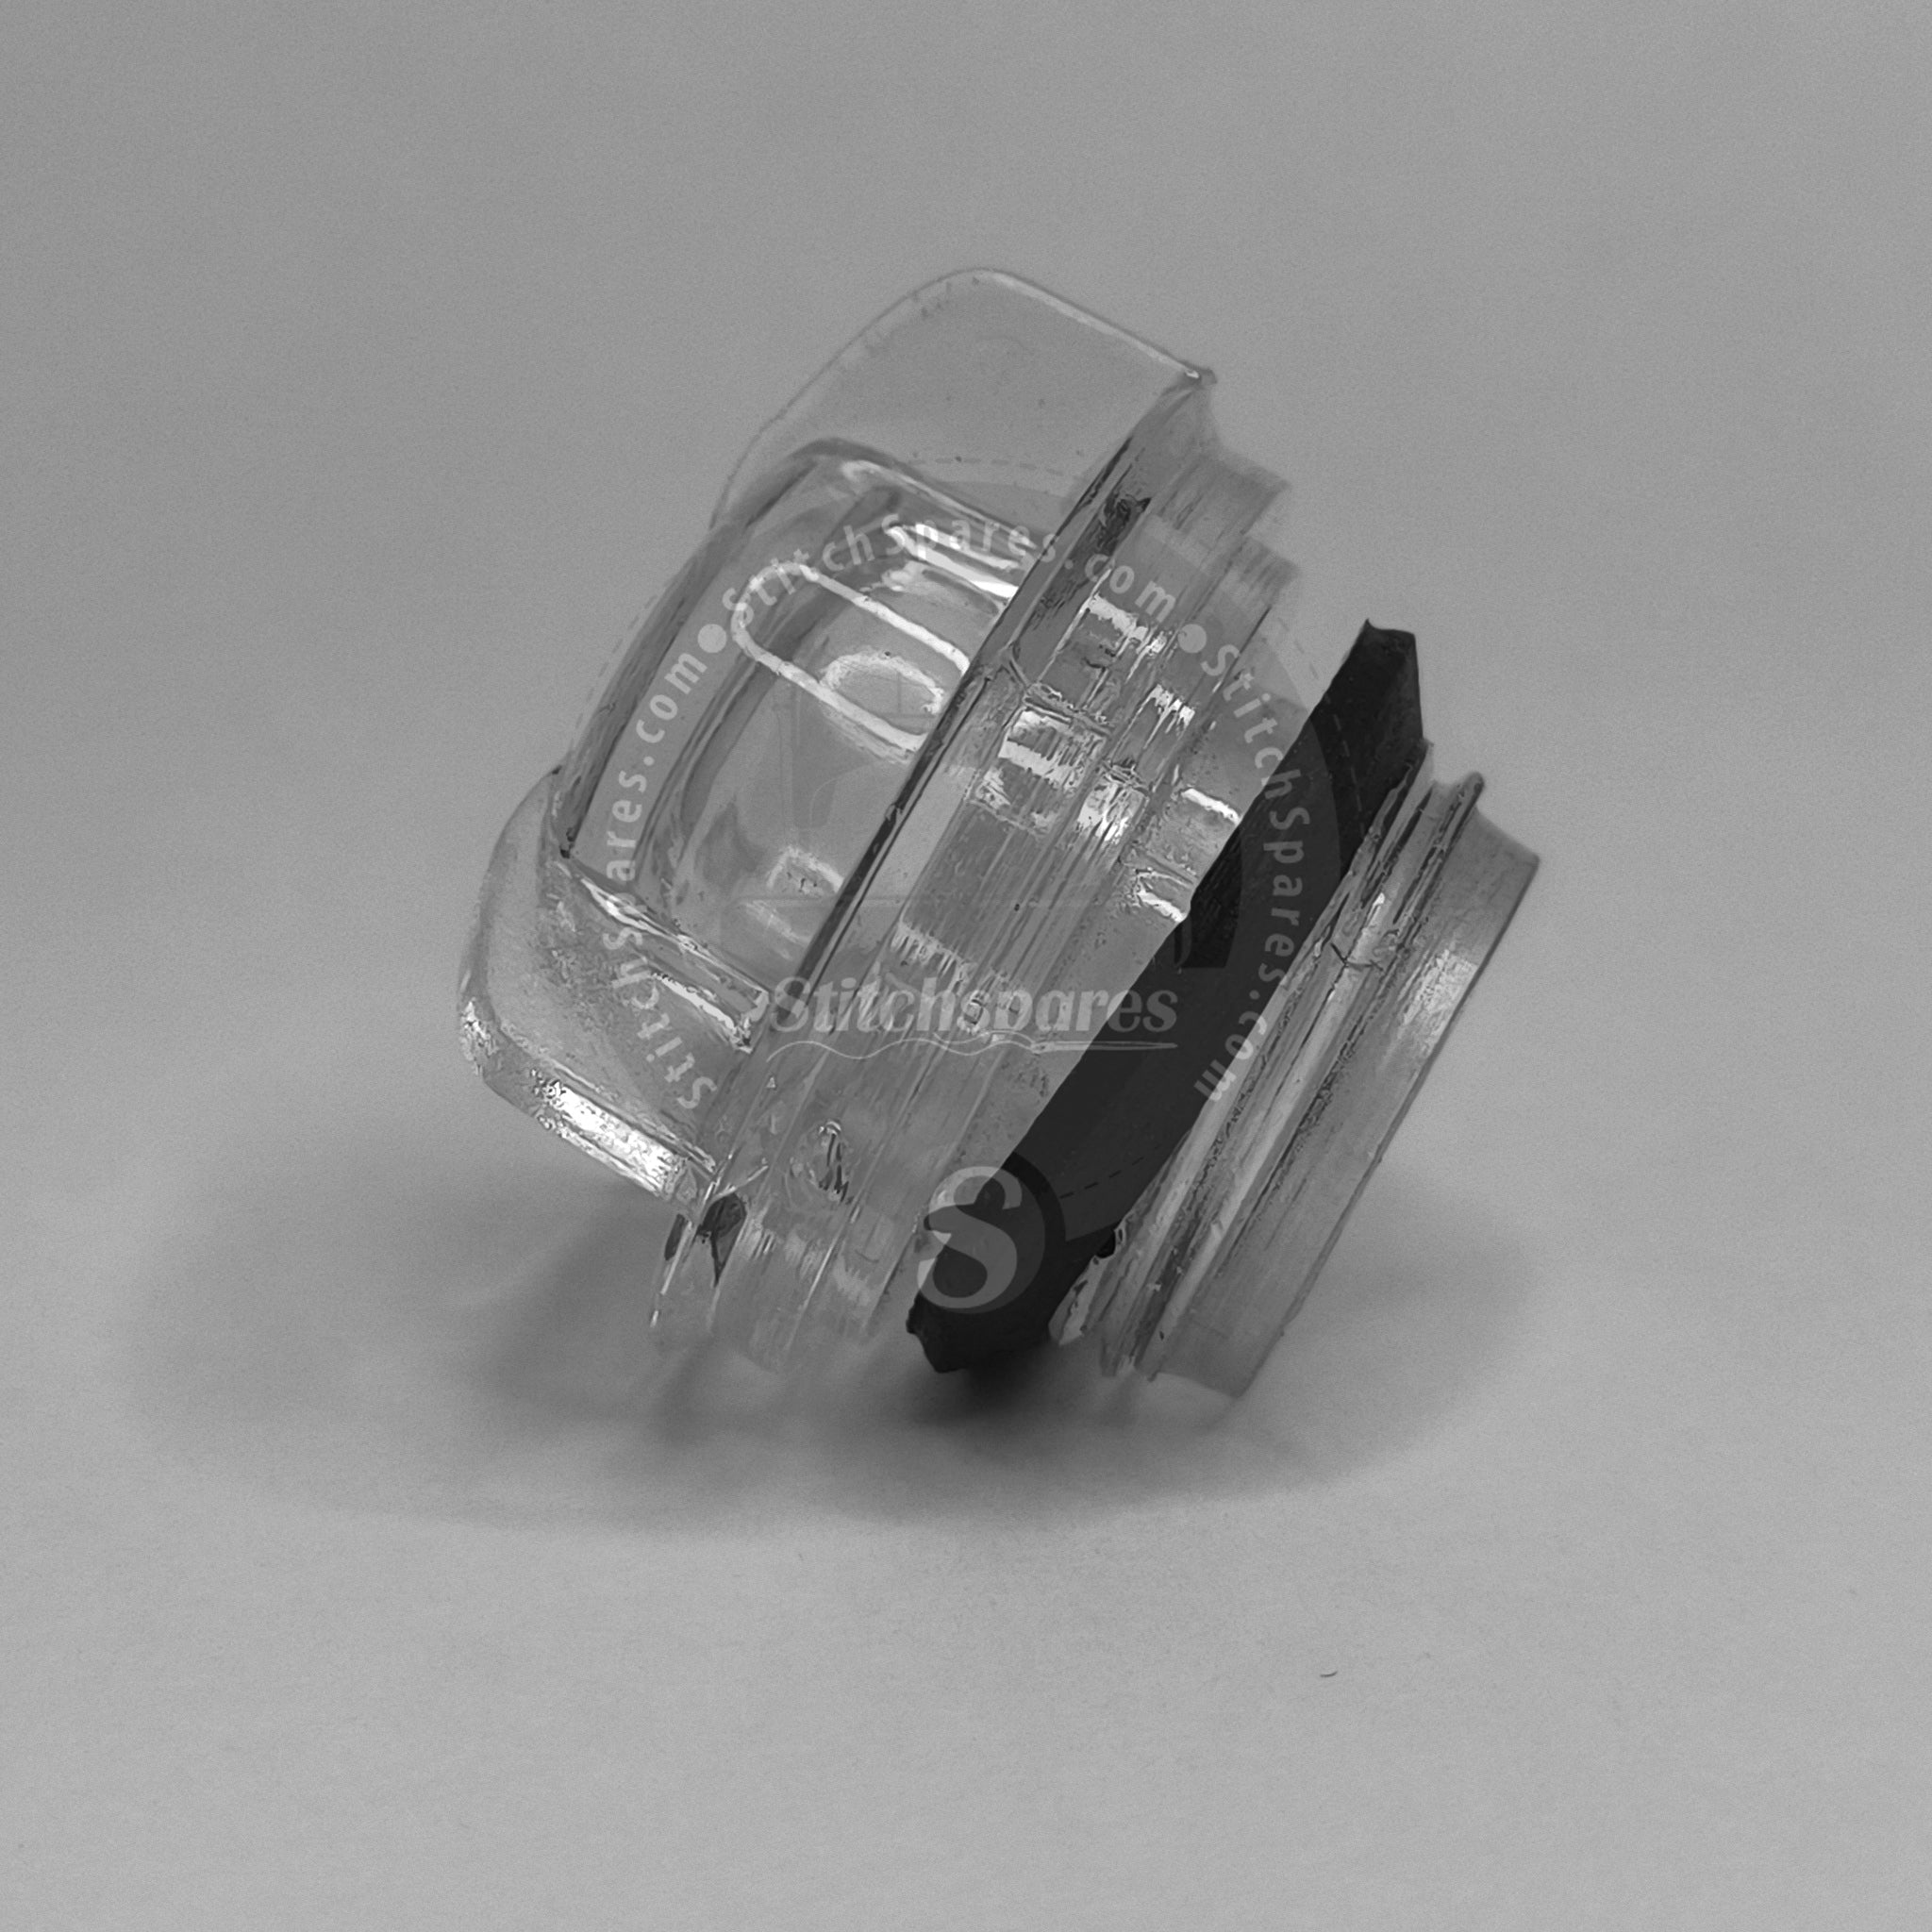 206457/206682 Ventana de visión de aceite PEGASUS M700 Repuesto para máquina de coser Overlock